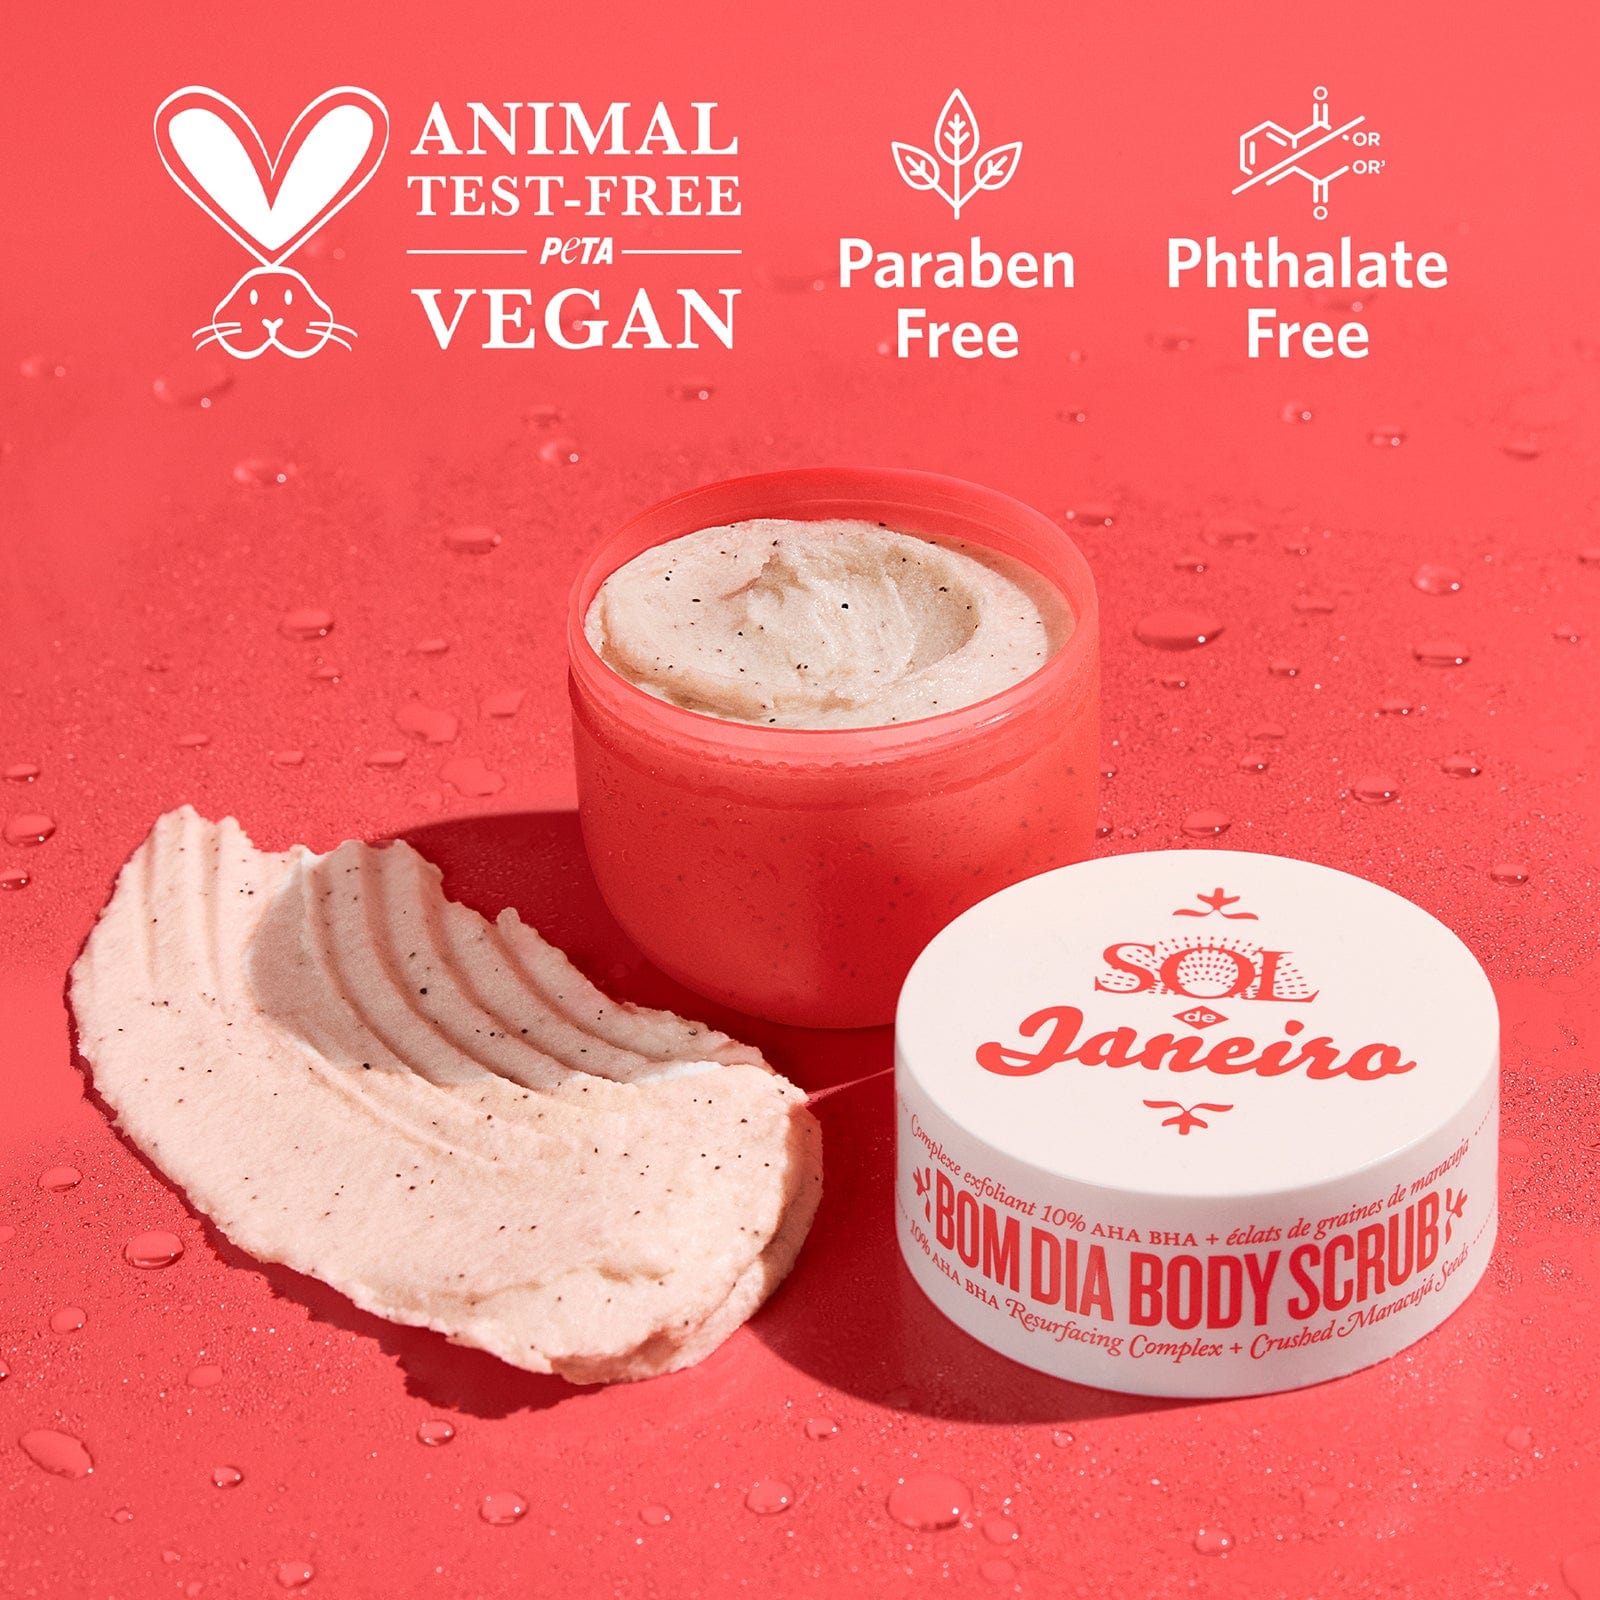 animal test-free PETA vegan - paraben free - phthalate free